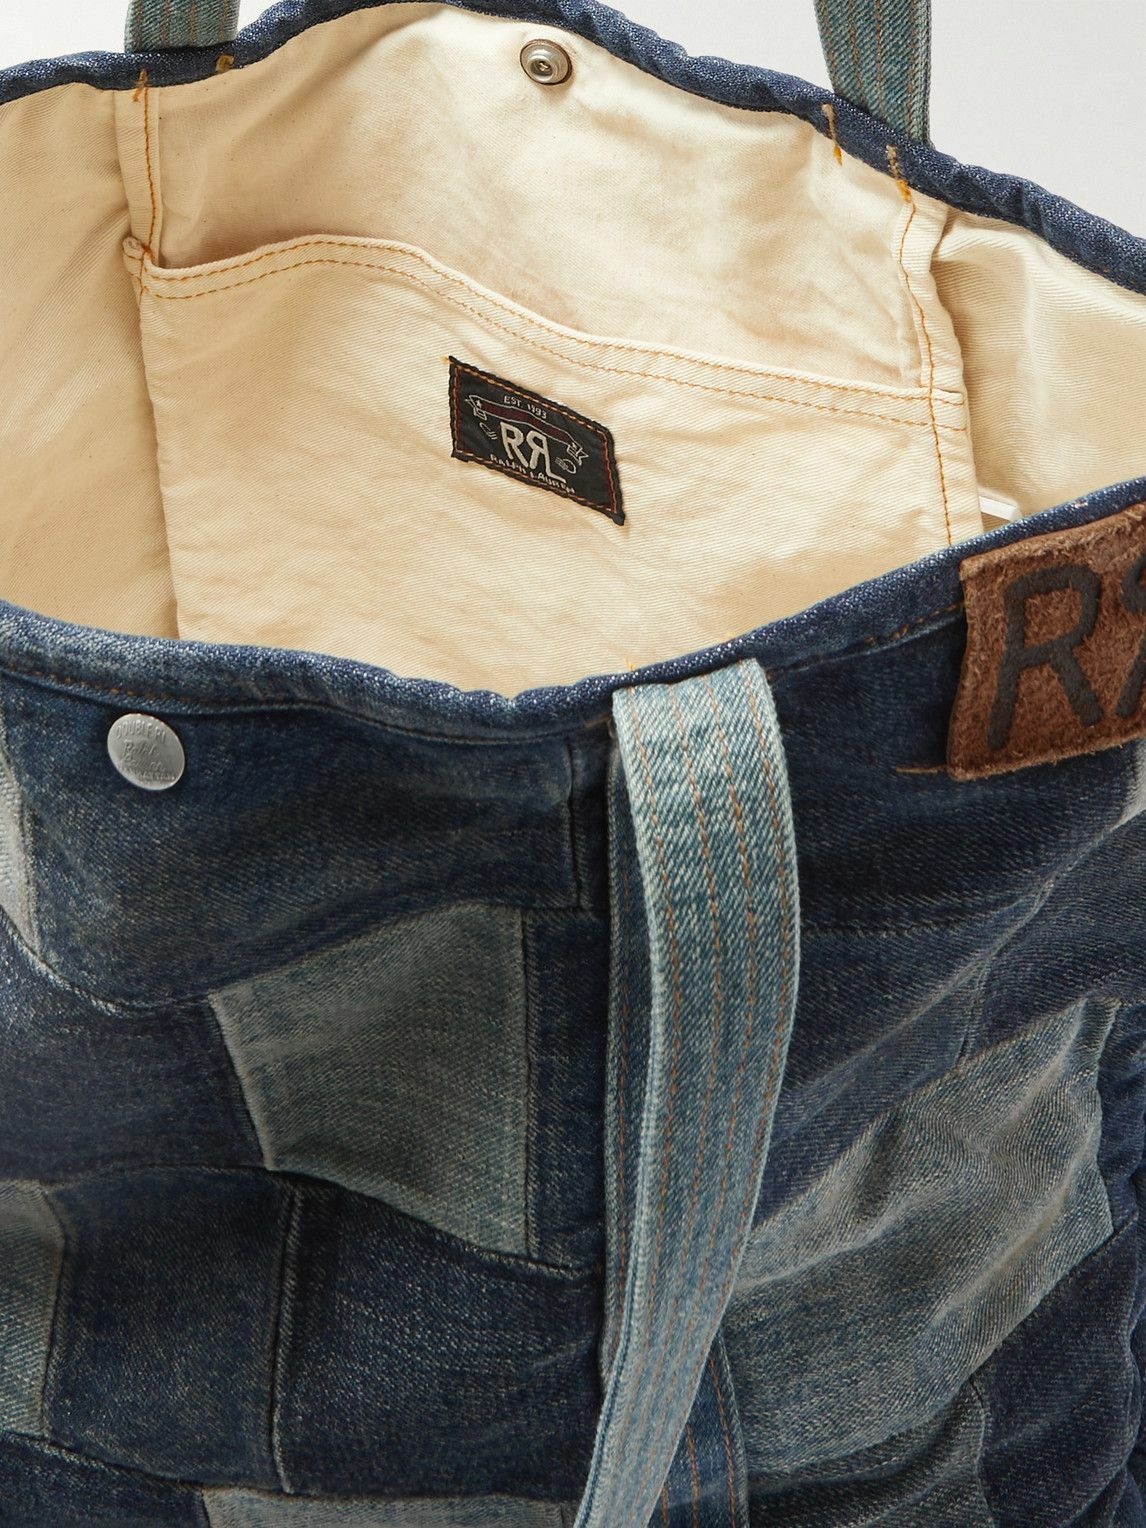 RRL - Otis Limited-Edition Leather-Trimmed Patchwork Denim Tote